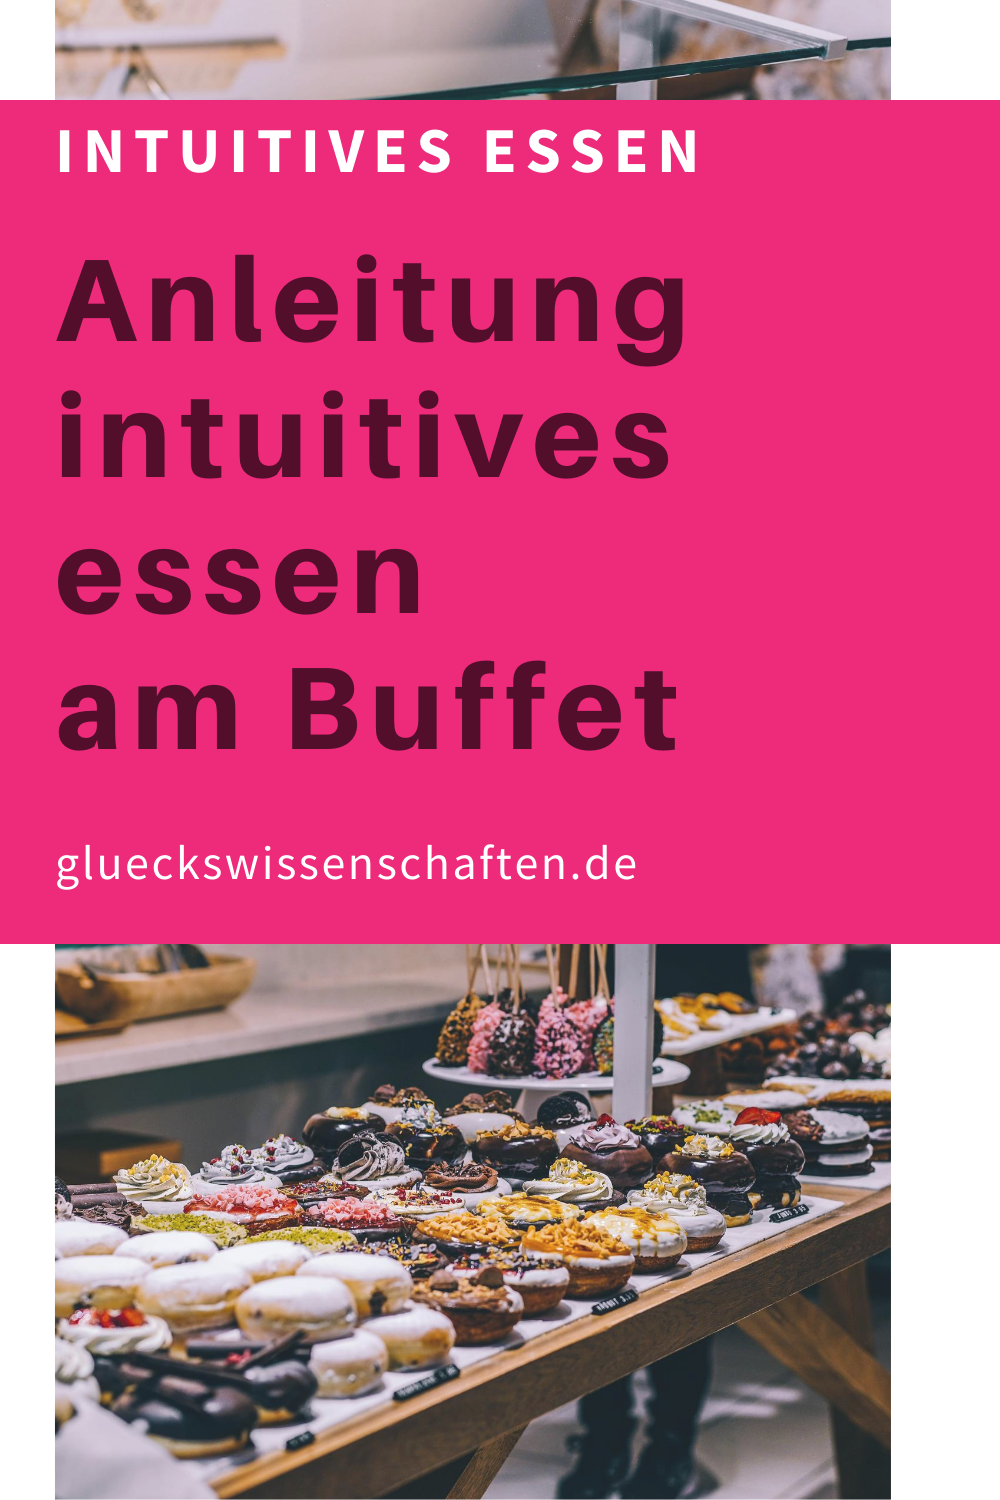 Glueckswissenschaften- Intuitives Essen - Schlaraffenland- Anleitung intuitives essen am Buffet